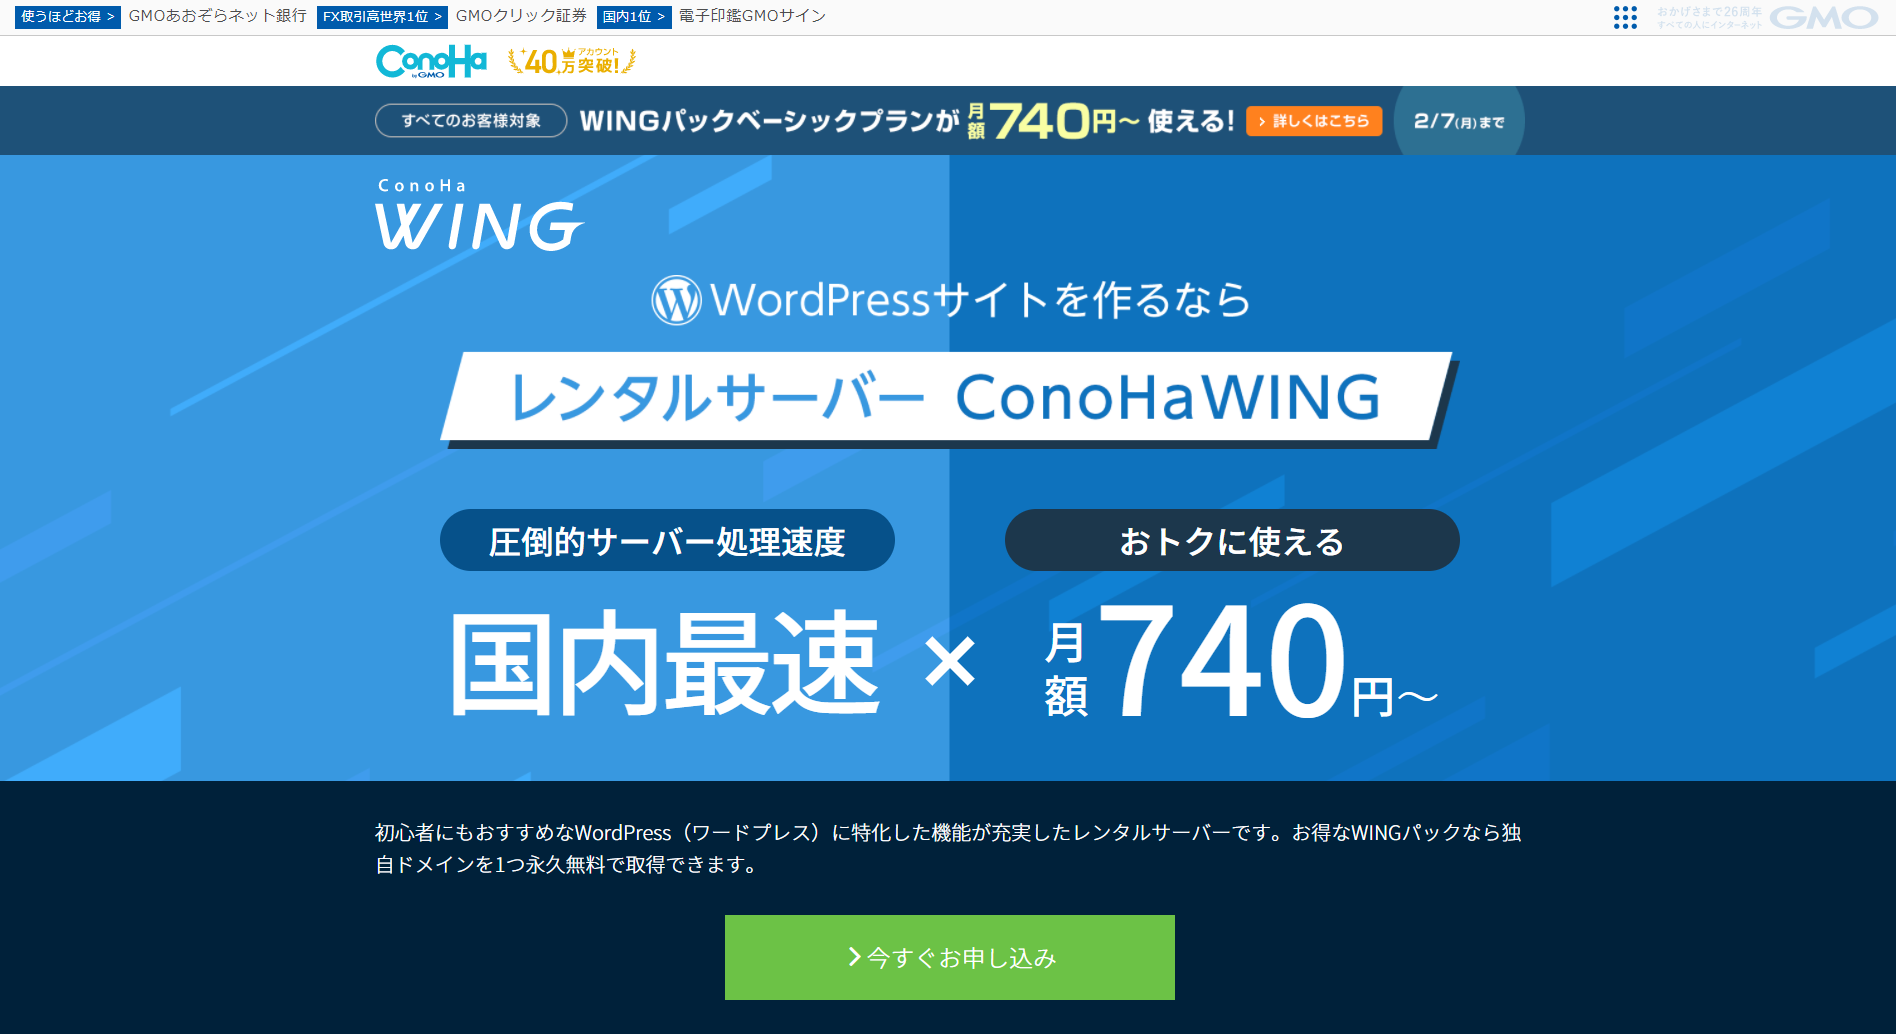 国内最速レンタルサーバー「ConoHaWING」の画面